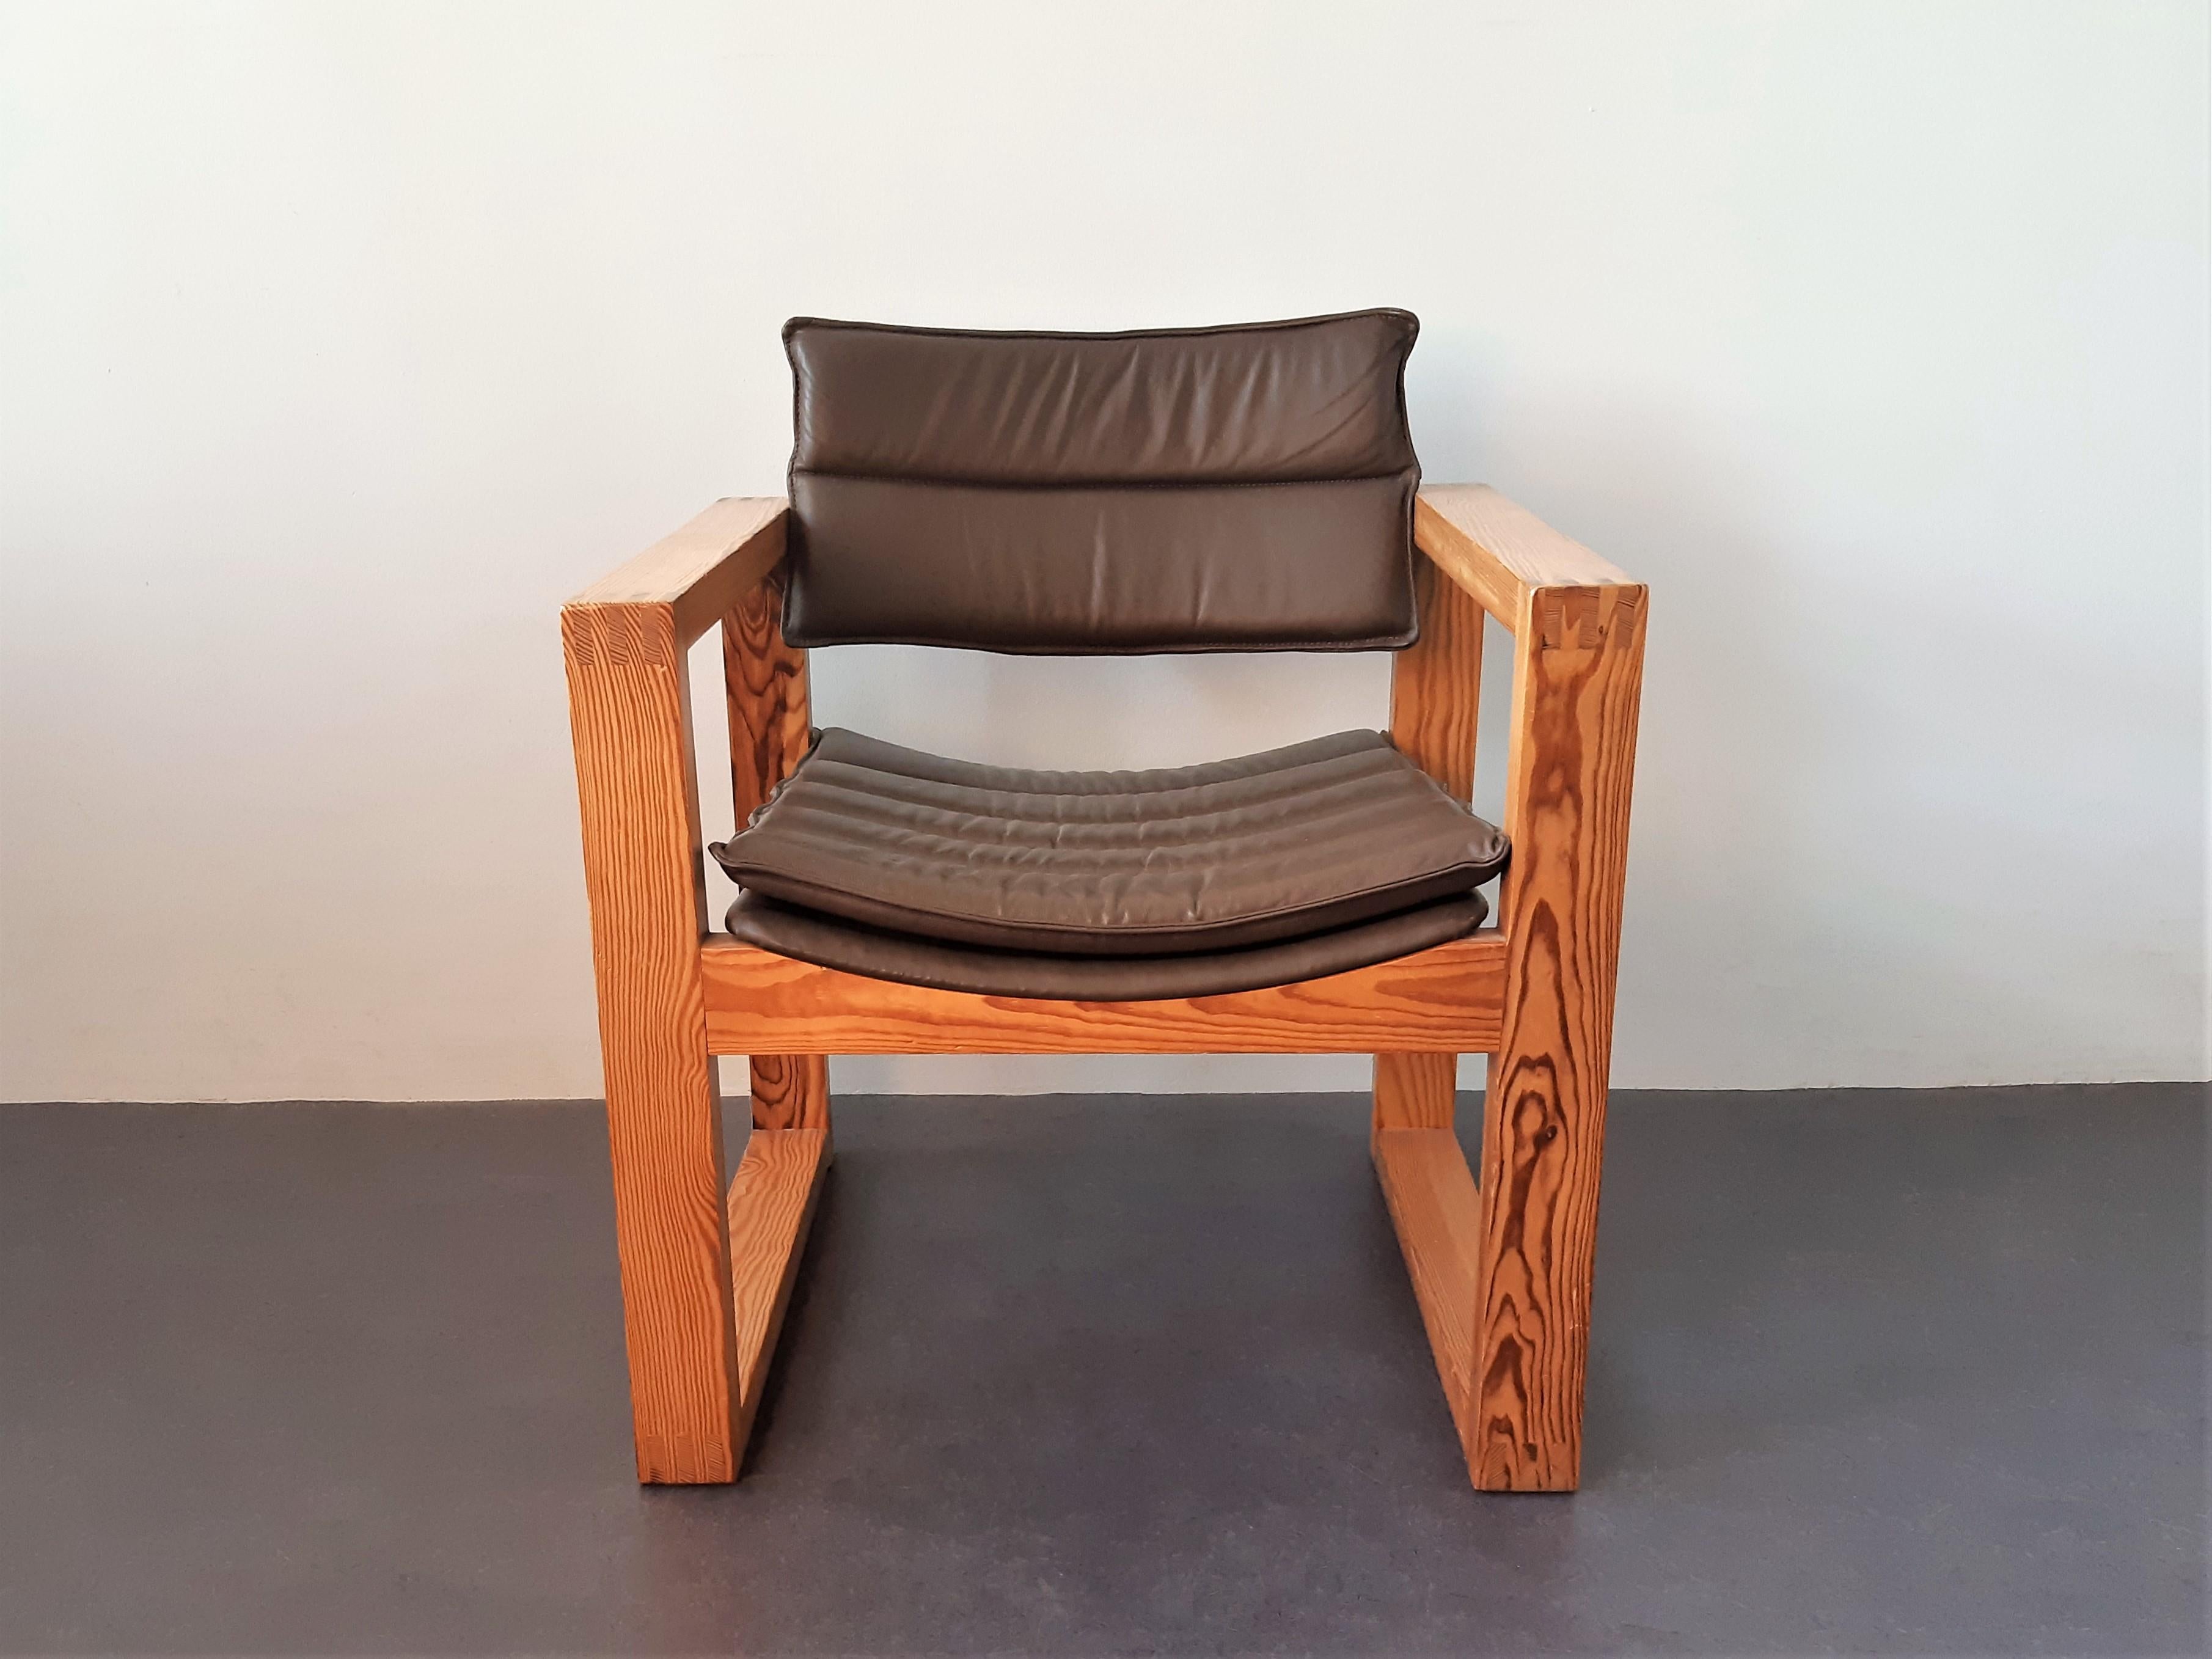 Cette chaise est d'un très beau design, minimaliste et cubique, réalisé par Ate van Apeldoorn pour Houtwerk Hattem. L'utilisation de matériaux et de techniques est importante pour ses créations. Le cadre est en bois de pin massif et l'assise et le